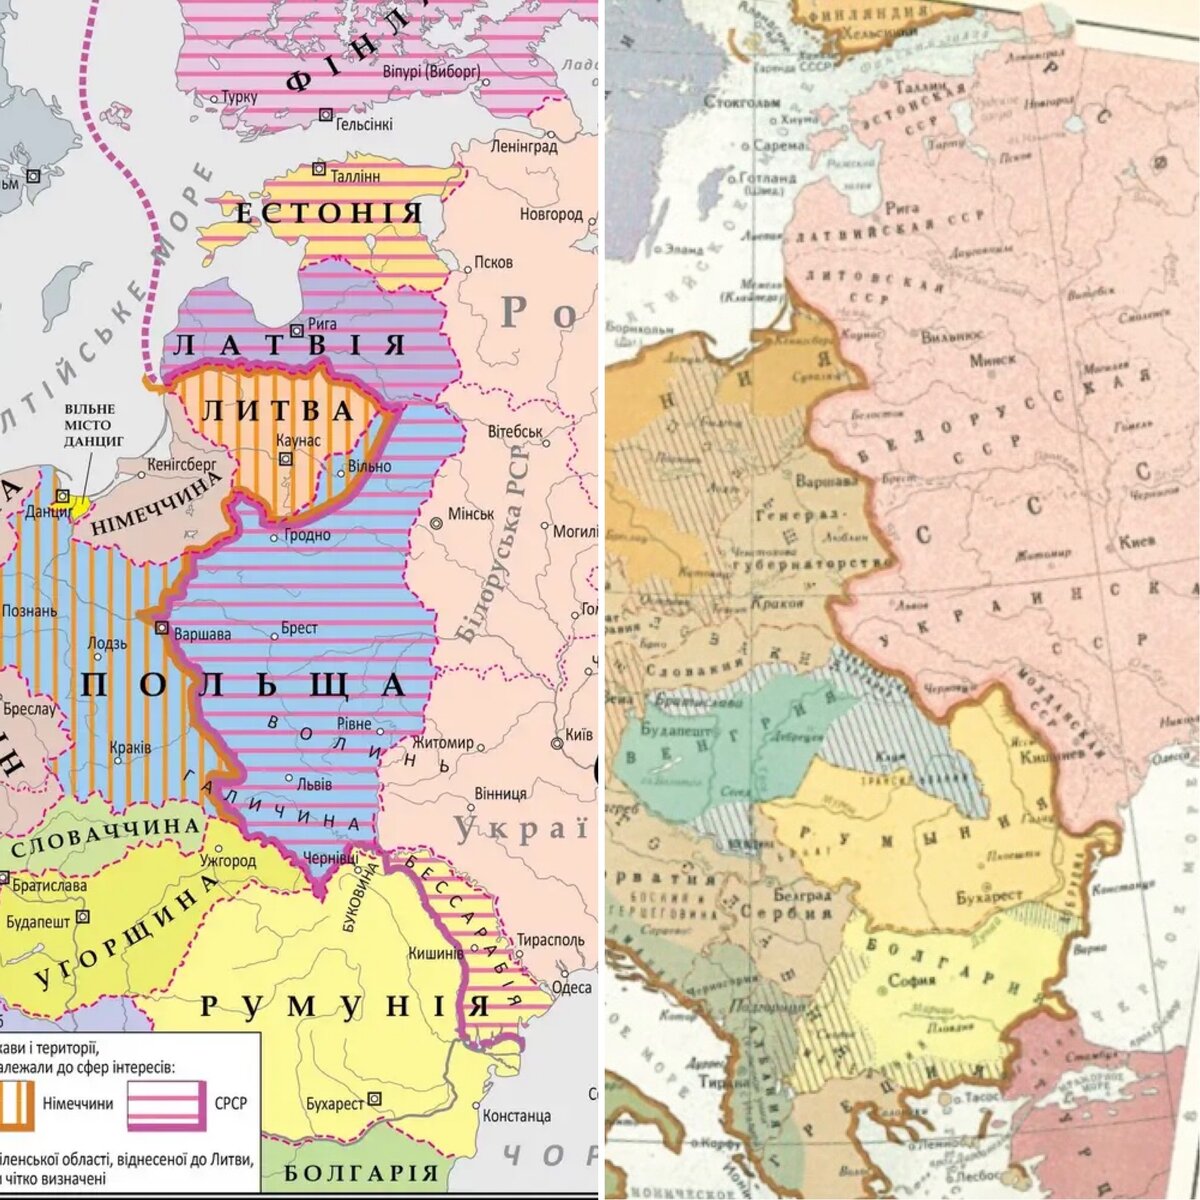 Первоначальные границы сферы влияния и реально сложившиеся. Есть разница. Всю Финляндию СССР не взял. Литва перешла от Германии к СССР. В Польше граница прошла восточнее первоначально обговорённой.